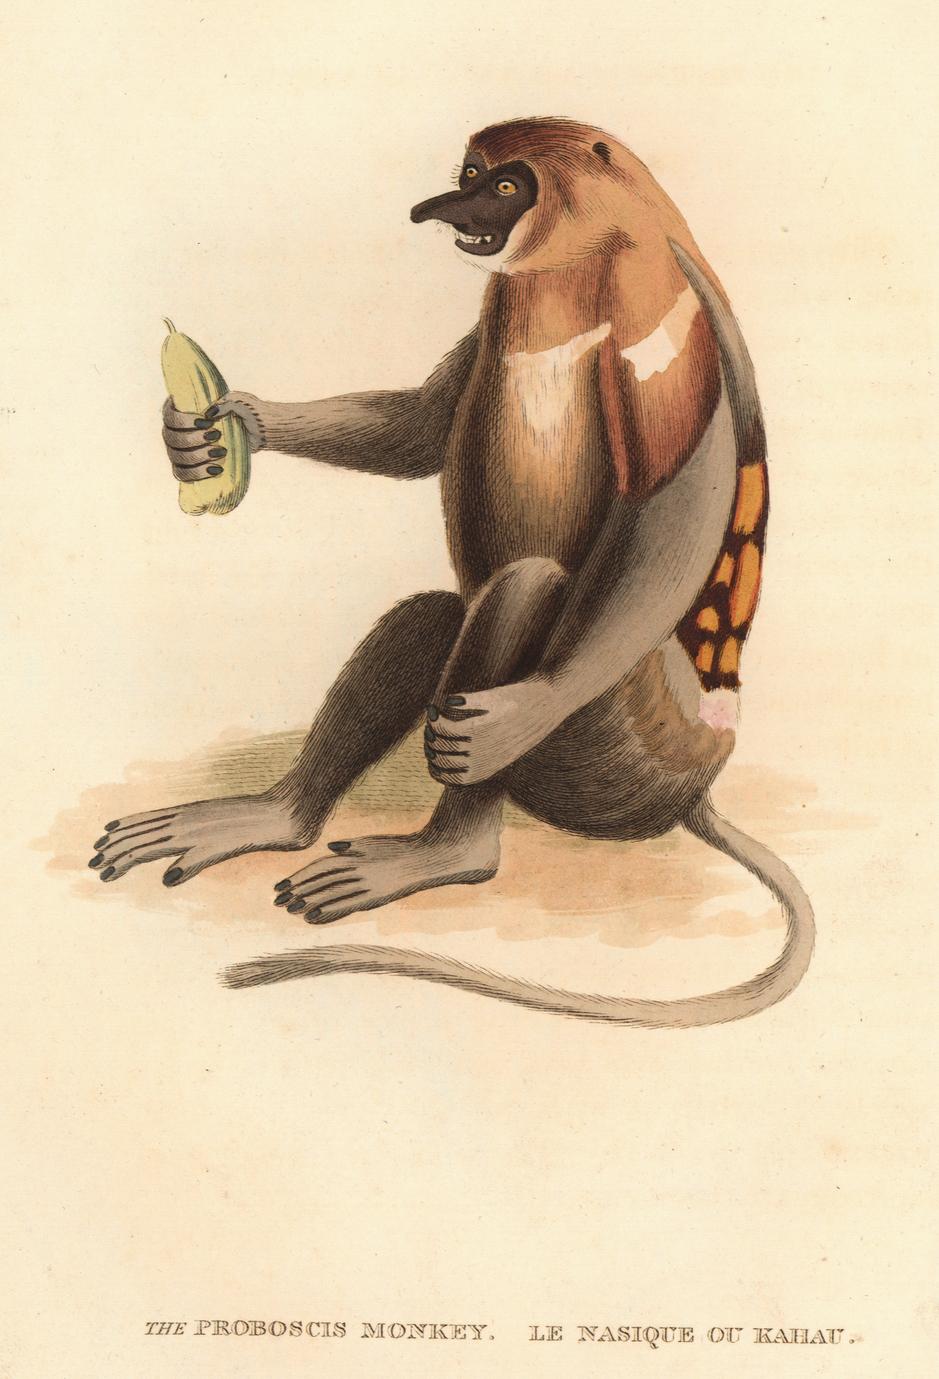 The Proboscis Monkey